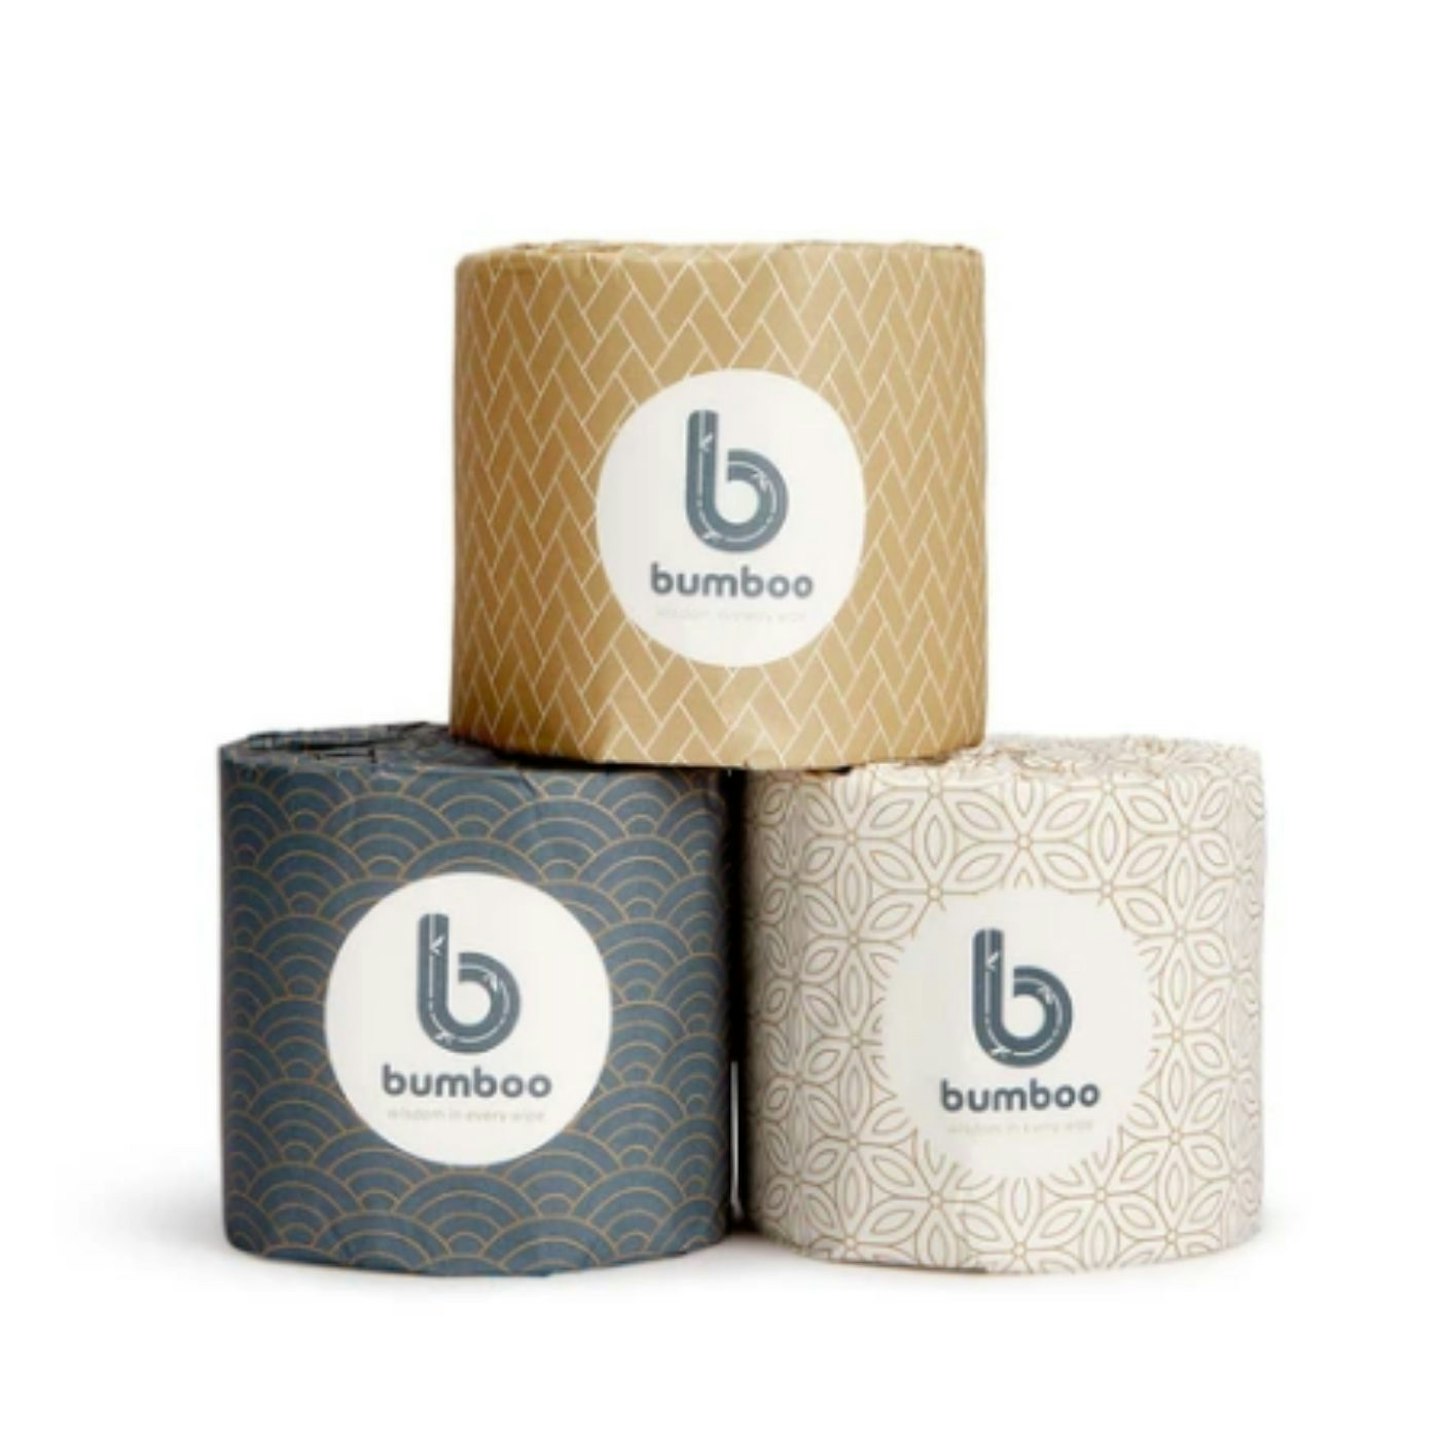 Luxury Bamboo Toilet Tissue